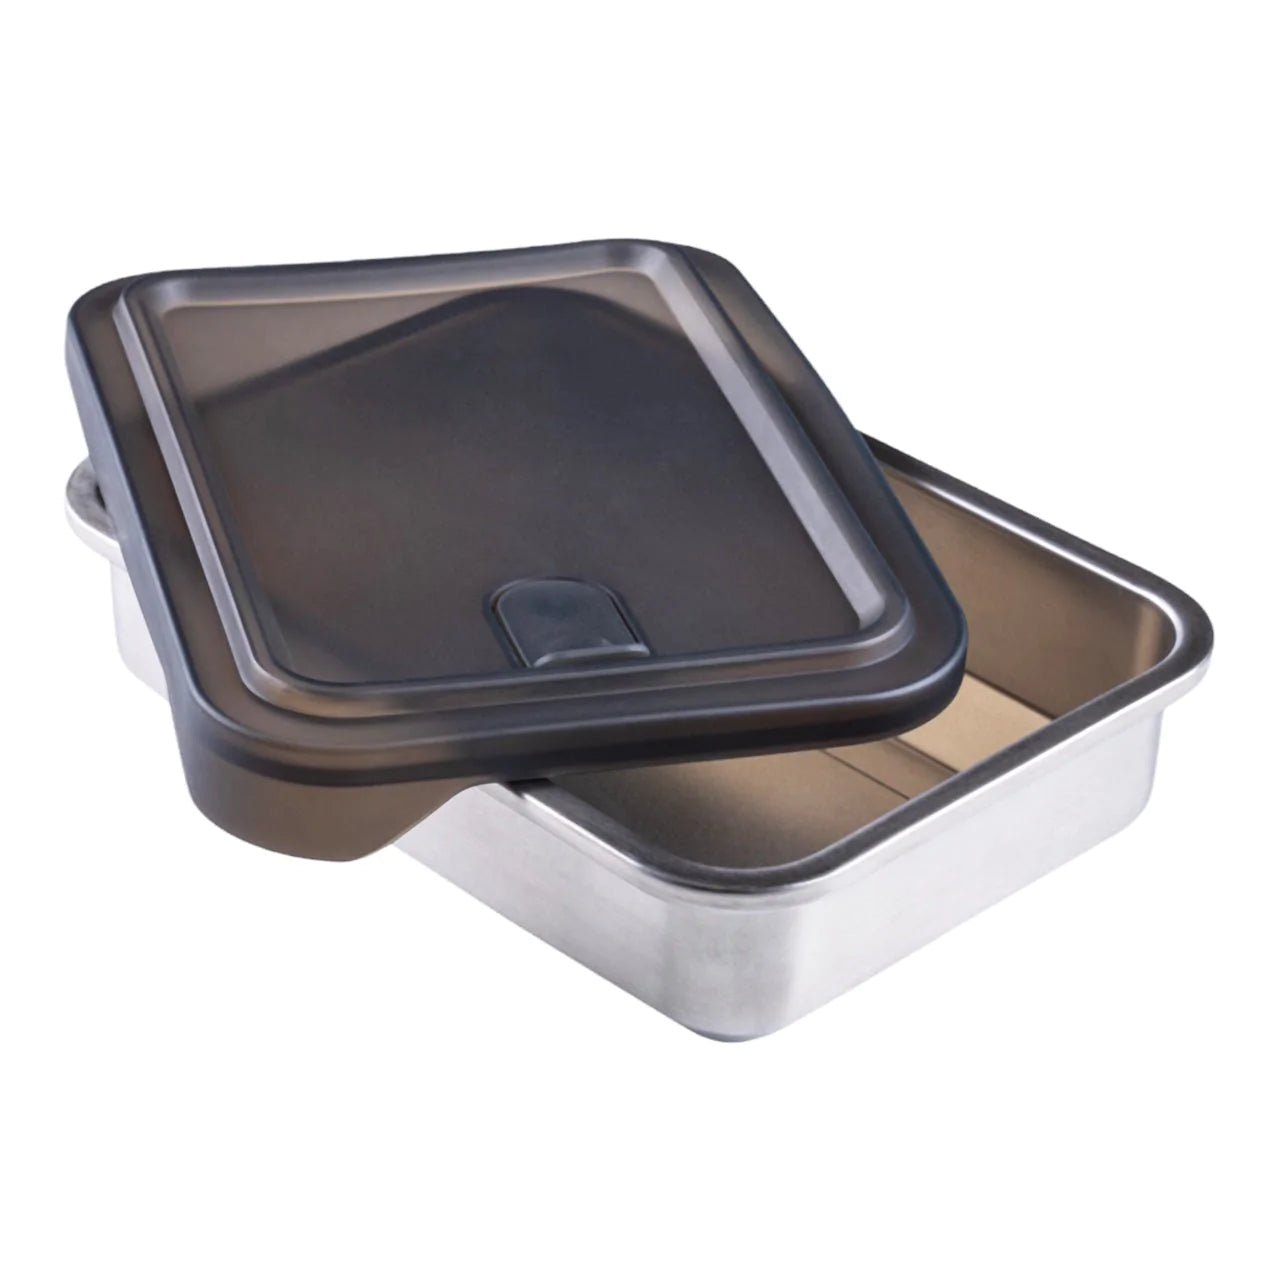 Edelstahl Lunchbox filip® - #shop_nameLunchbox Edelstahl filip® No3 | meal prep box - #shop_name